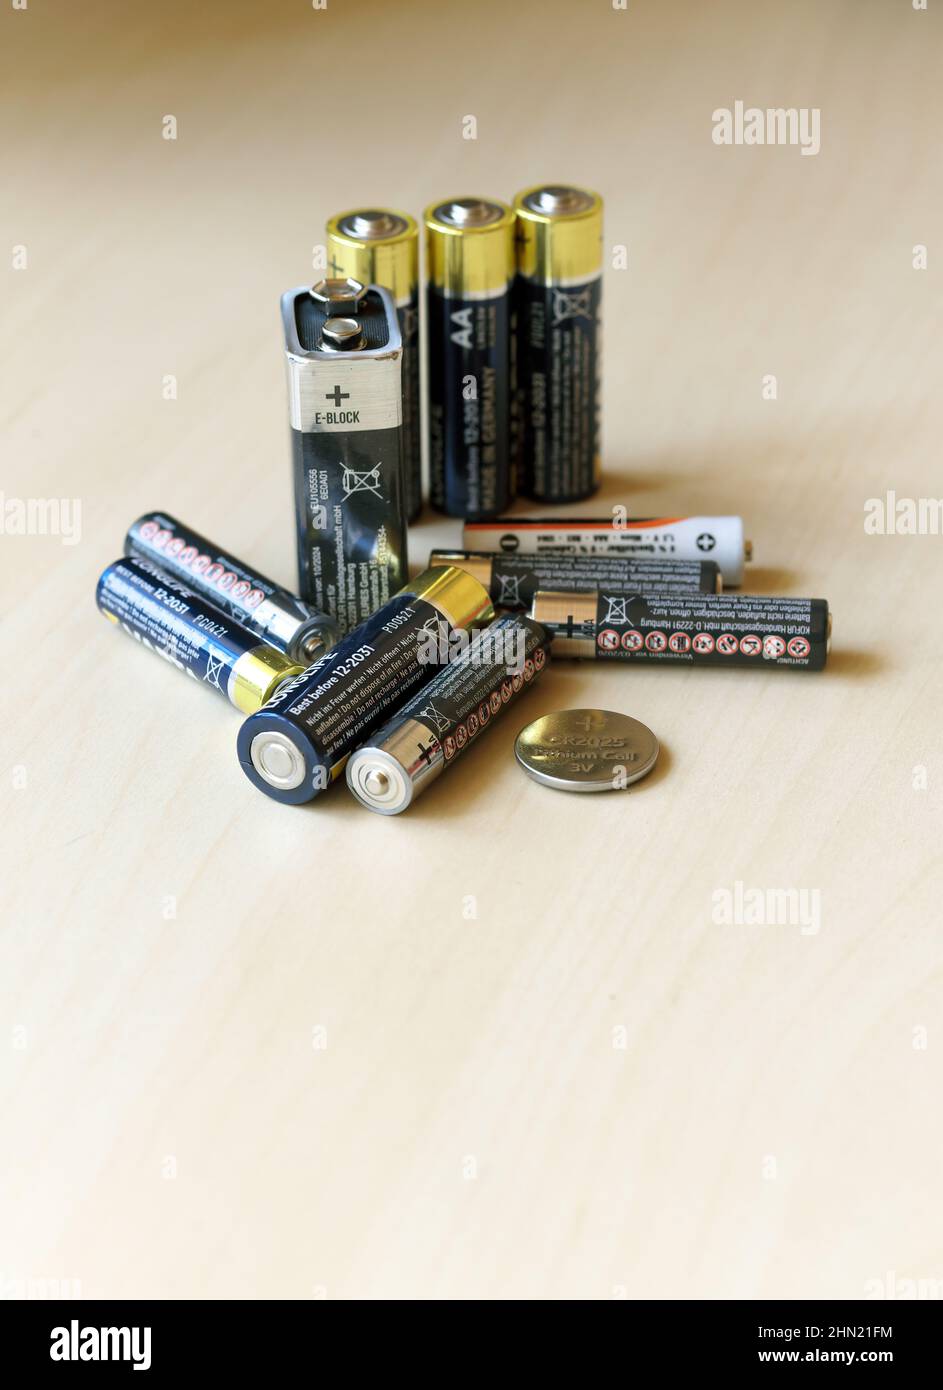 Immagine simbolica: Approvvigionamento e riciclaggio di energia, varie batterie per uso domestico Foto Stock